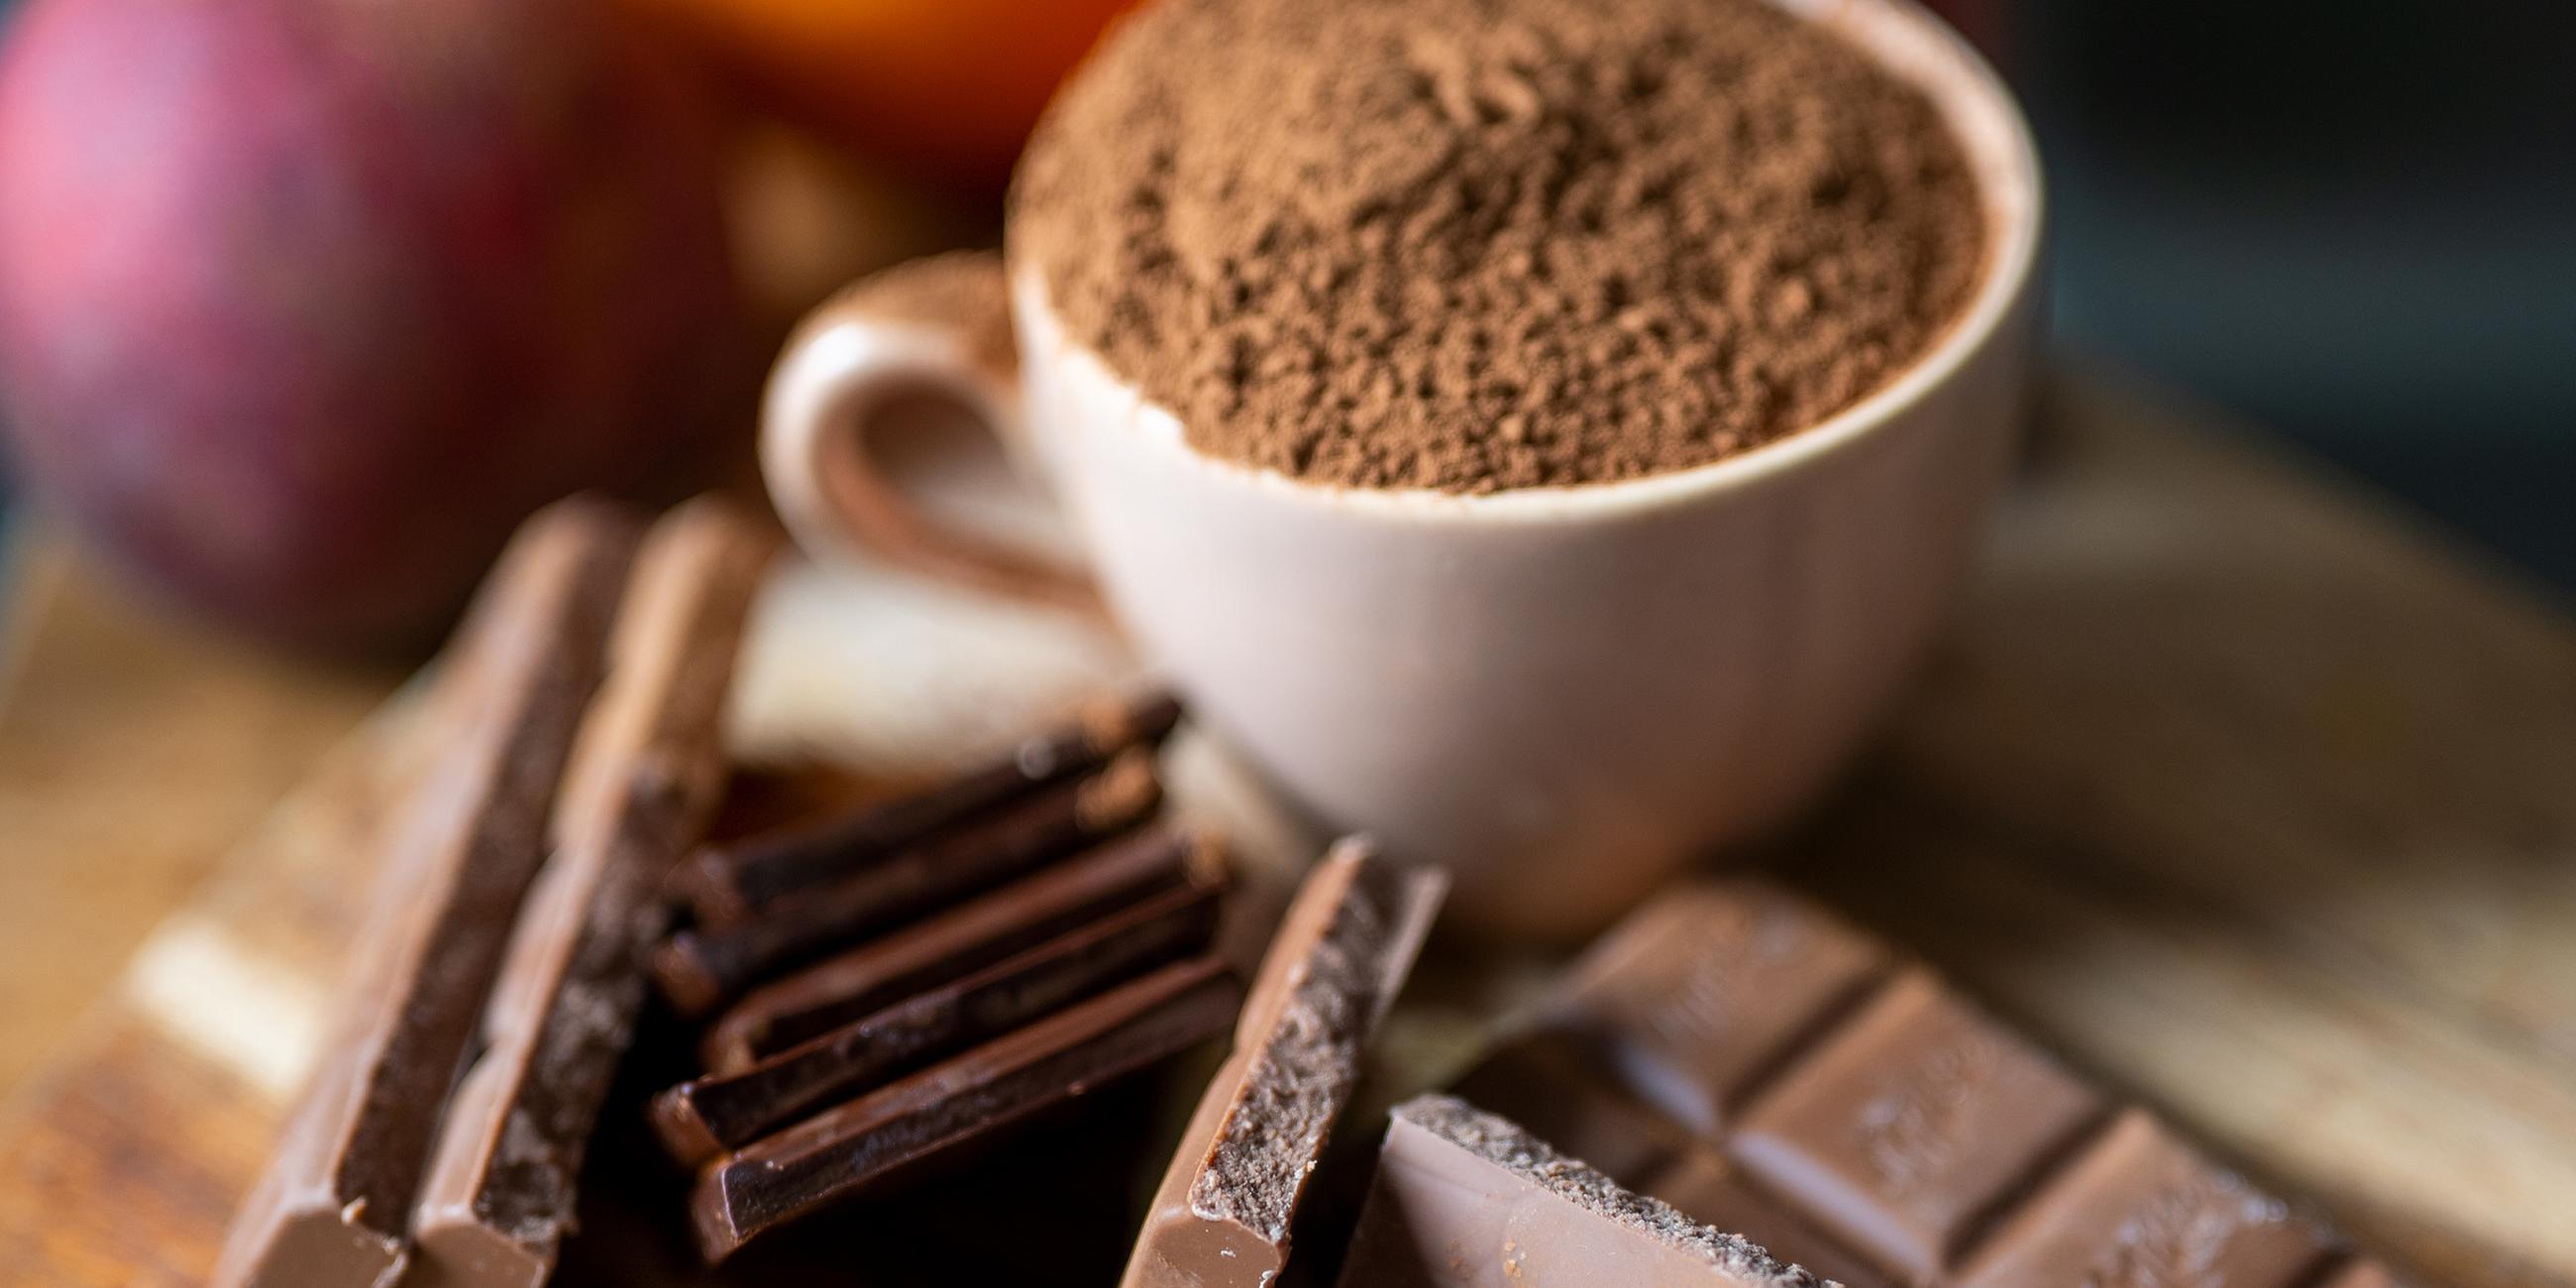 Schokolade neben einer mit Kakaopulver gefülltenTasse